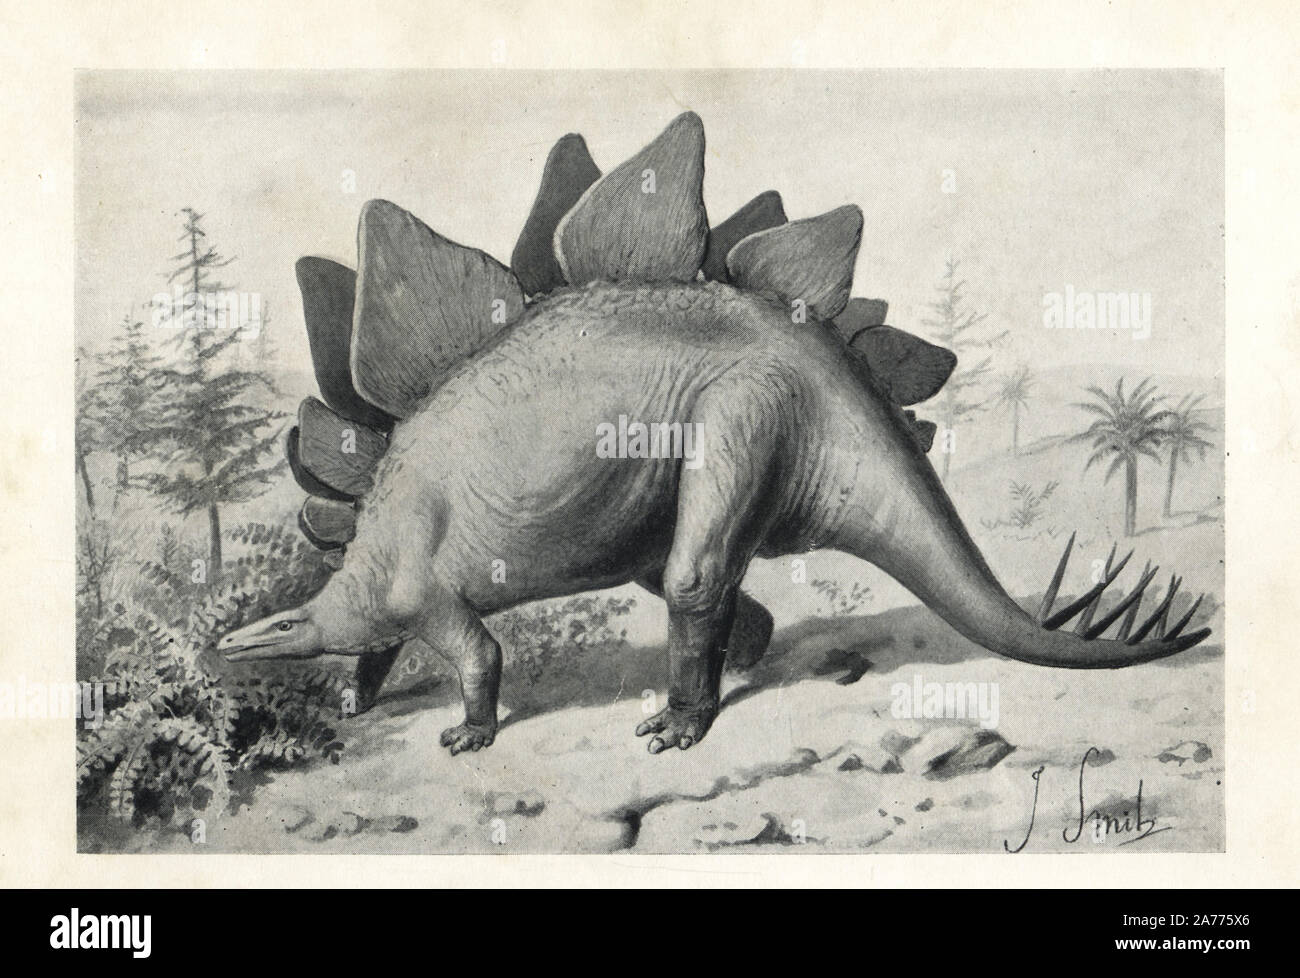 Stegosaurus ungulatus, dubiose Arten vielleicht Stegosaurus armatus, Jurassic Ära, Nordamerika. Illustration von J. Smit von H. N. Hutchinson's 'ausgestorbenen Monster und Kreaturen von anderen Tagen", Chapman und Hall, London, 1894. Stockfoto